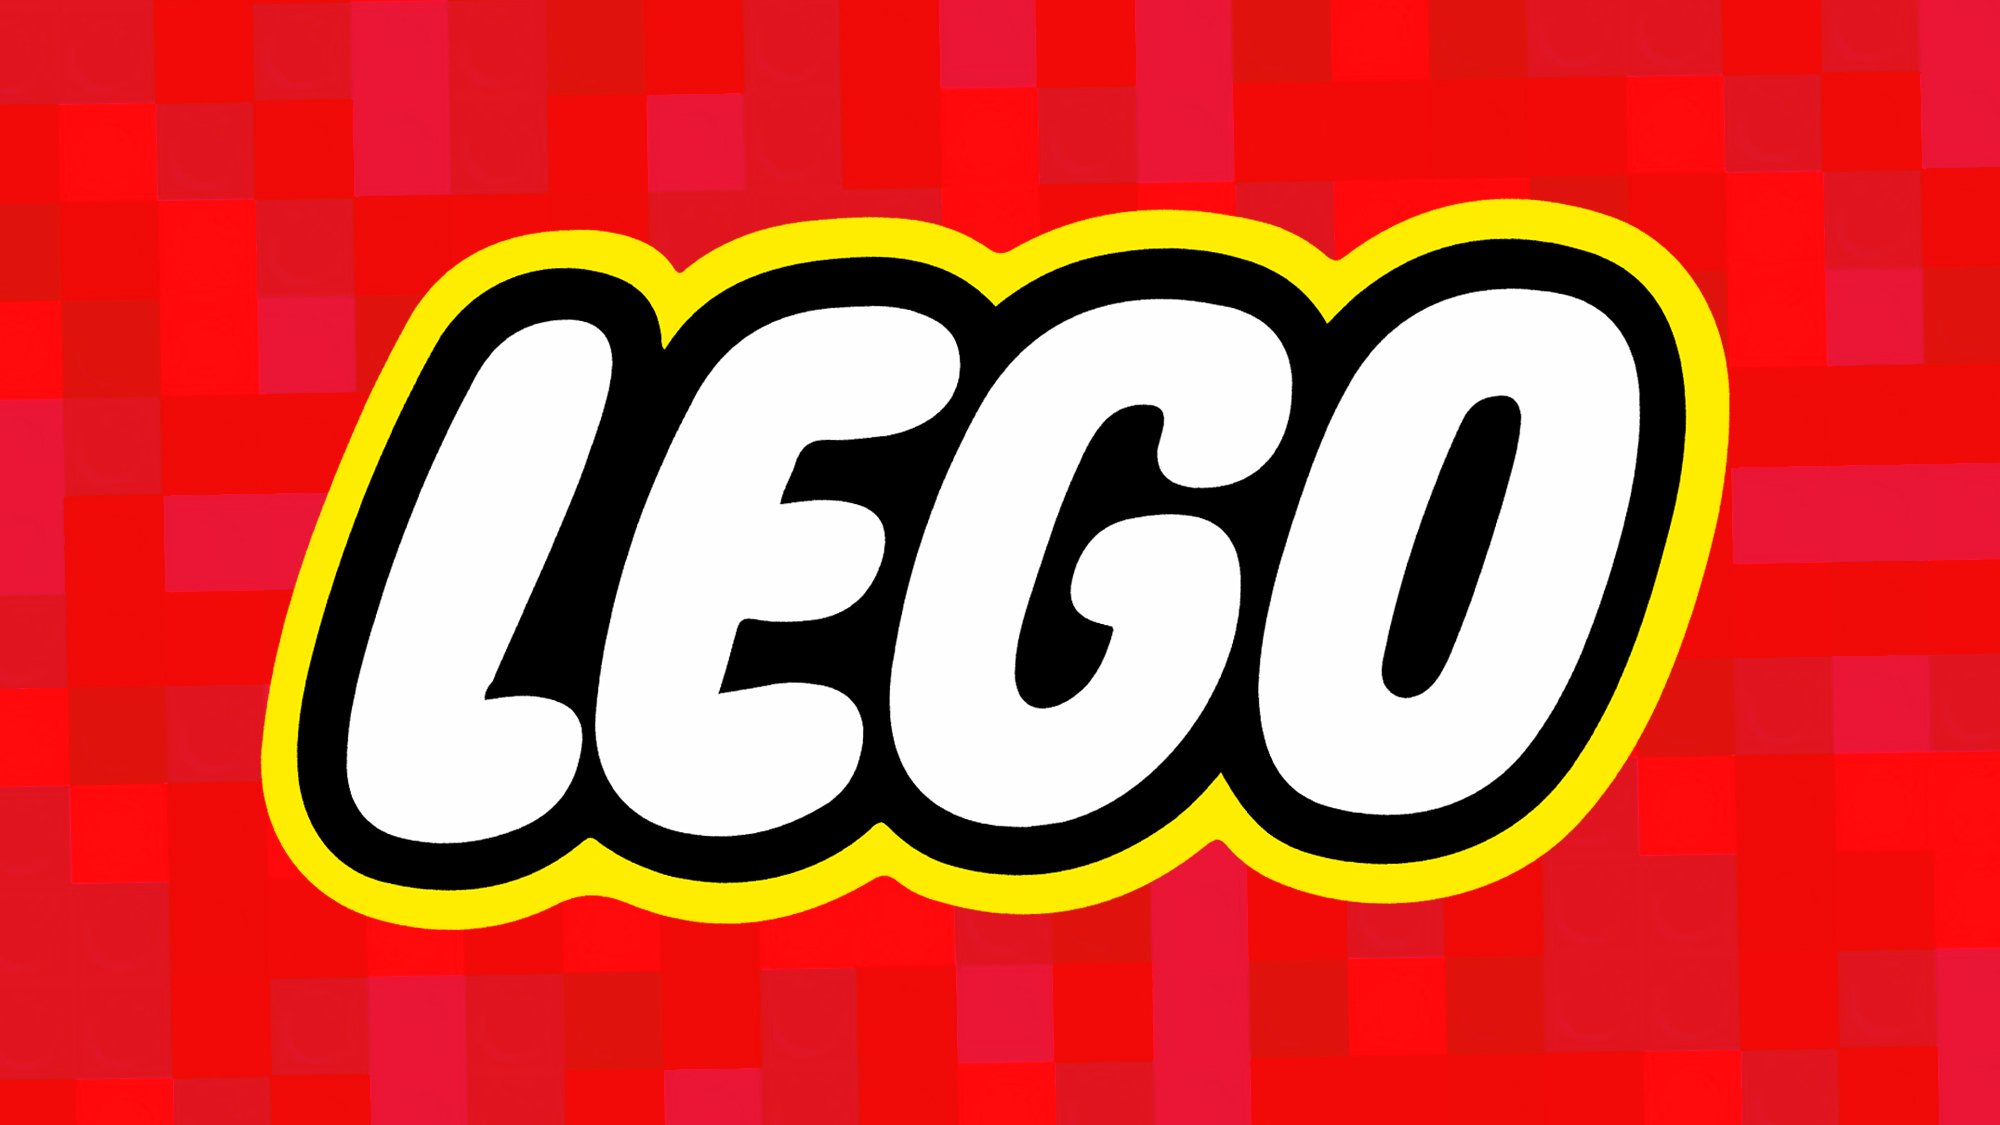 Chaussures de sport LEGO : les sorties d’avril 2024 avec des sets dingues de licences légendaires